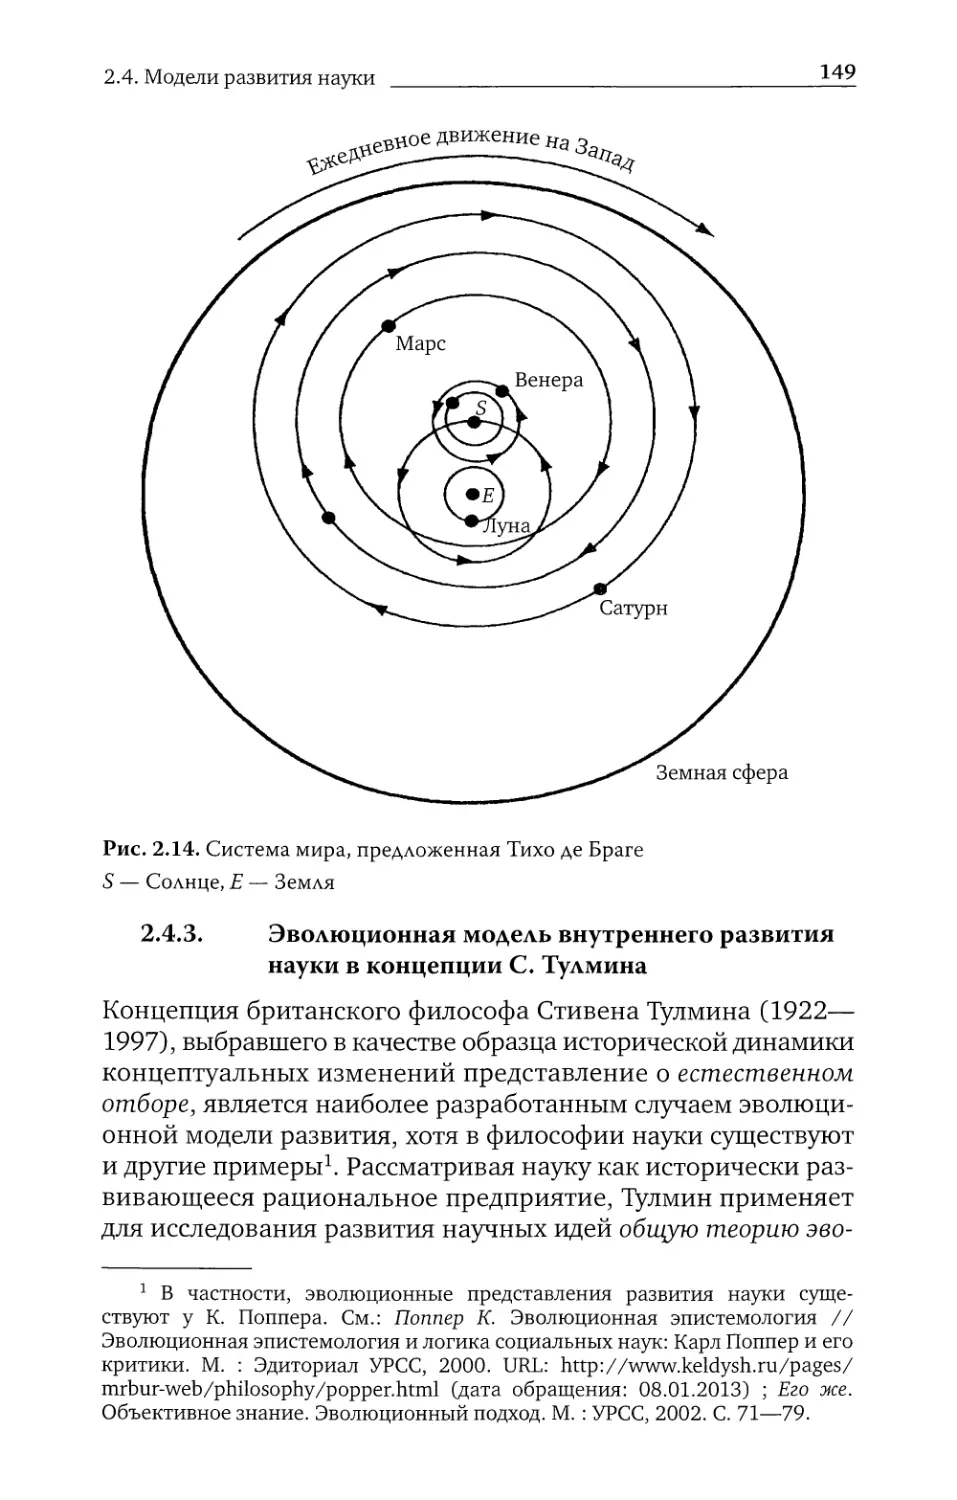 2.4.3. Эволюционная модель внутреннего развития науки в концепции С. Тулмина